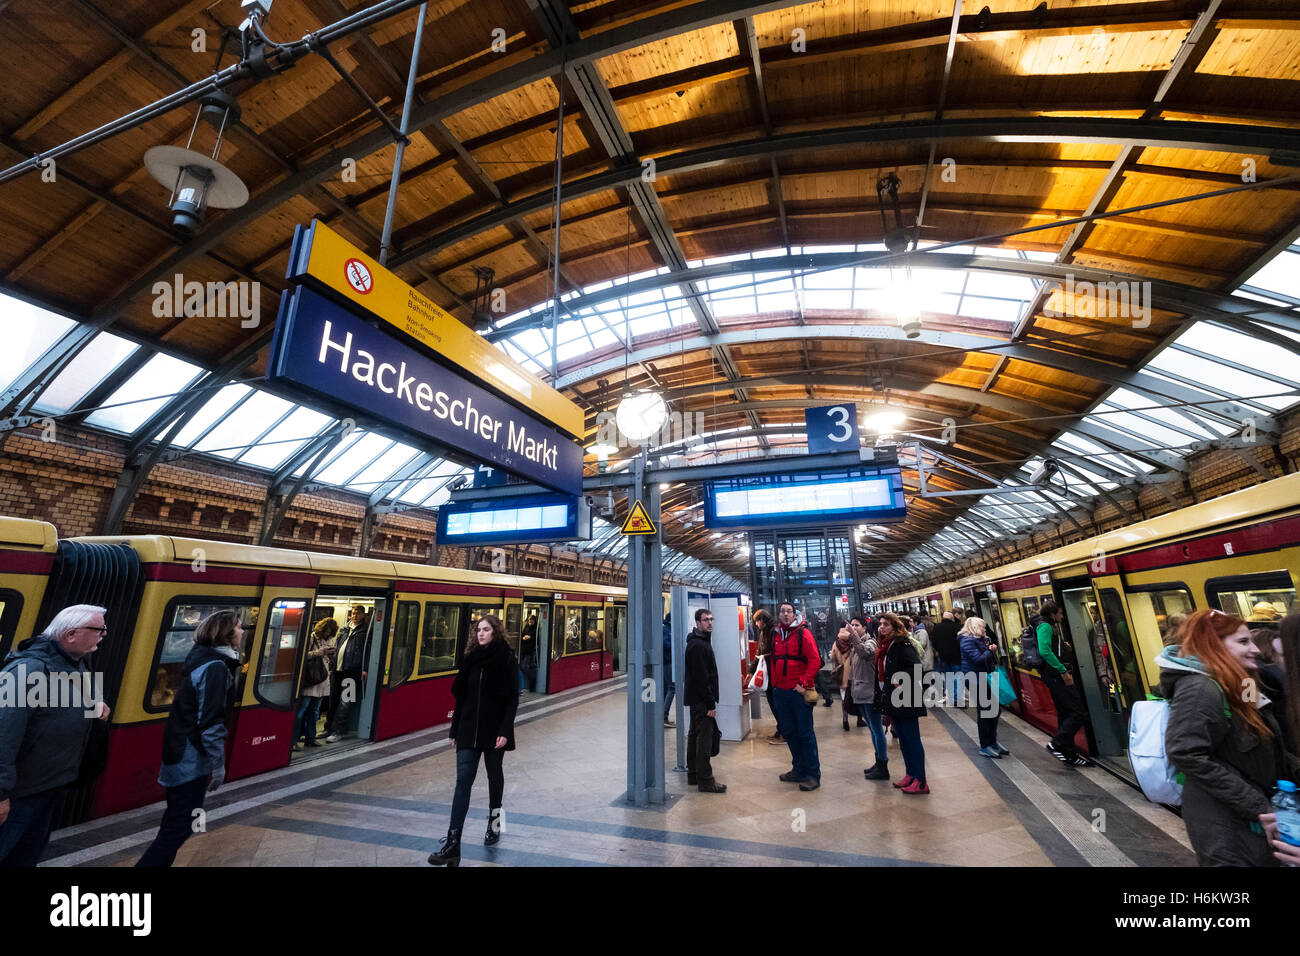 Plattform und S-Bahn-Züge am Bahnhof Hackescher Markt in Berlin Deutschland Stockfoto